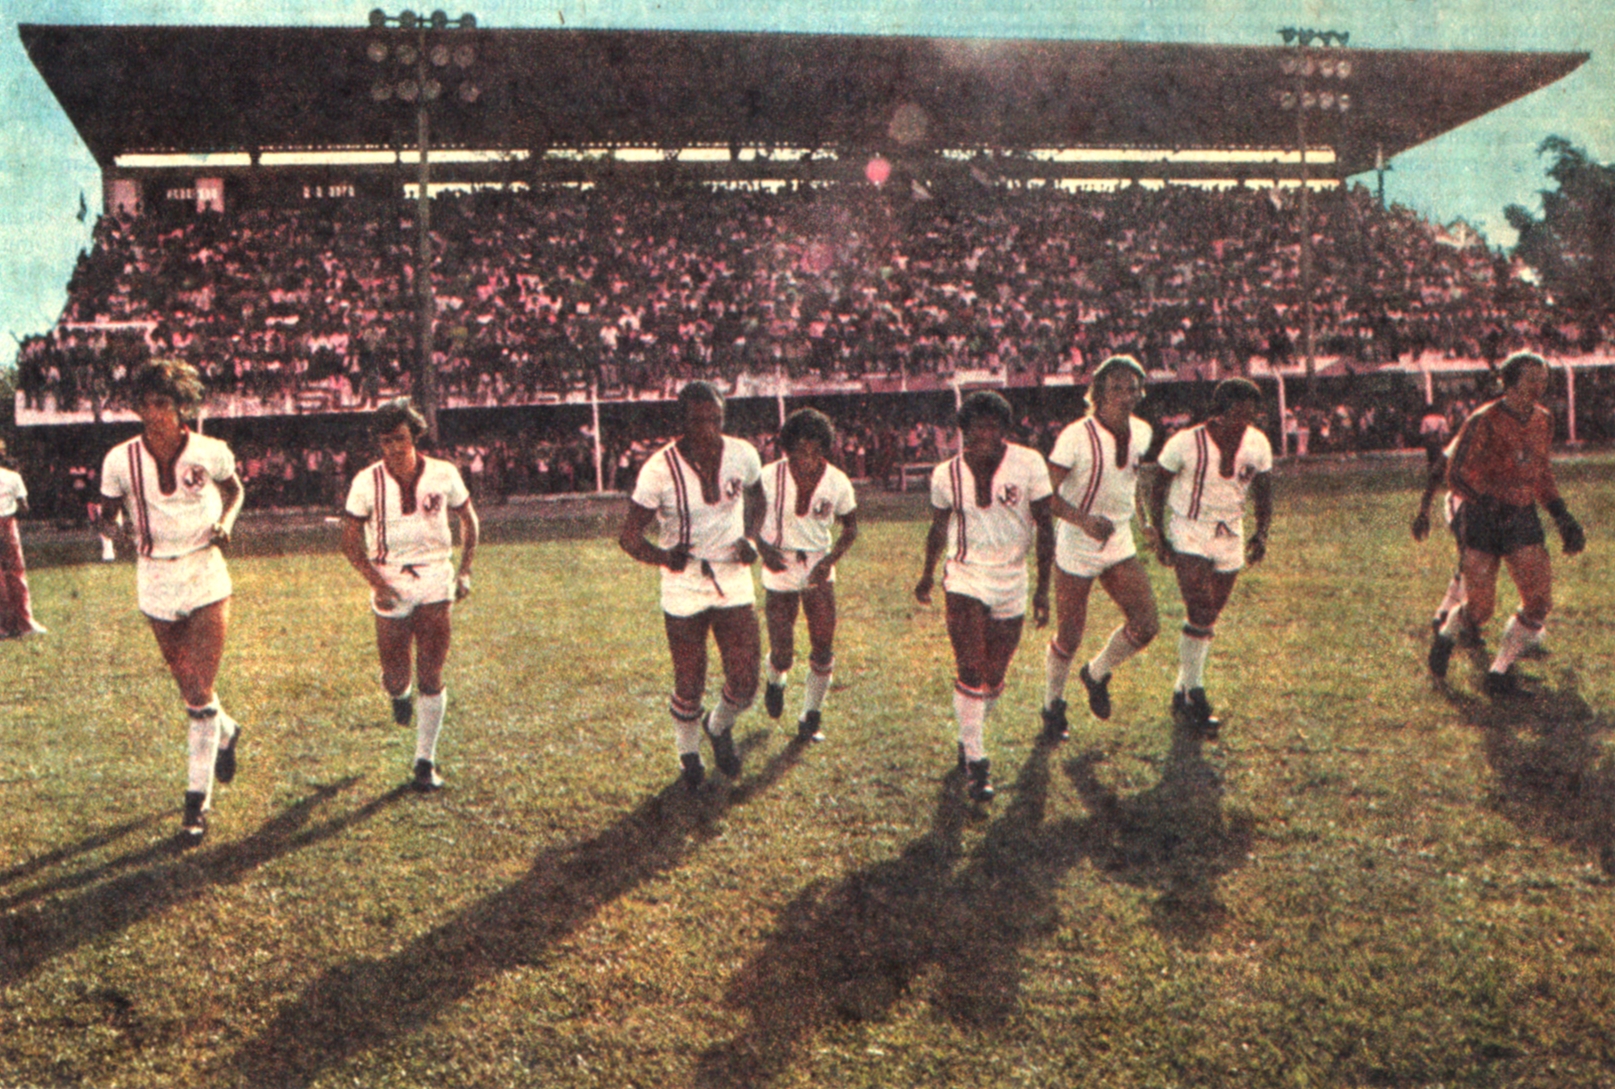 21-04-1976 (rev placar 06-76) (1) (Paulinho Teta, Zequinha, Ditão, Djalma, Samara, Joel, Tonho, Bosse, Ferreira)